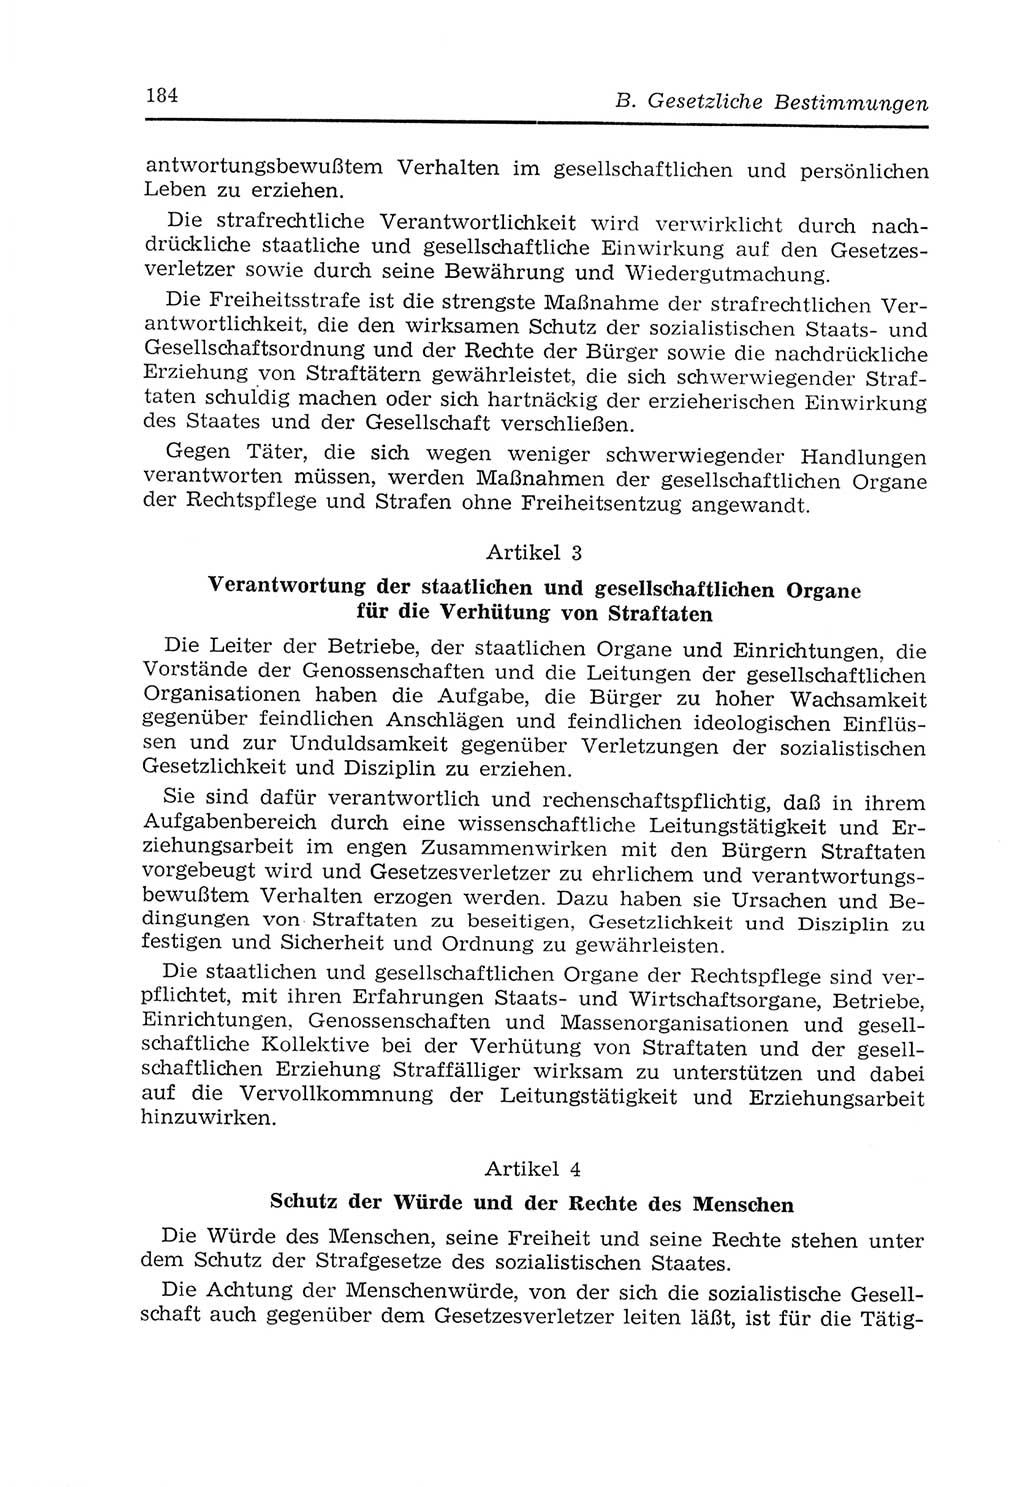 Strafvollzugs- und Wiedereingliederungsgesetz (SVWG) der Deutschen Demokratischen Republik (DDR) 1968, Seite 184 (SVWG DDR 1968, S. 184)